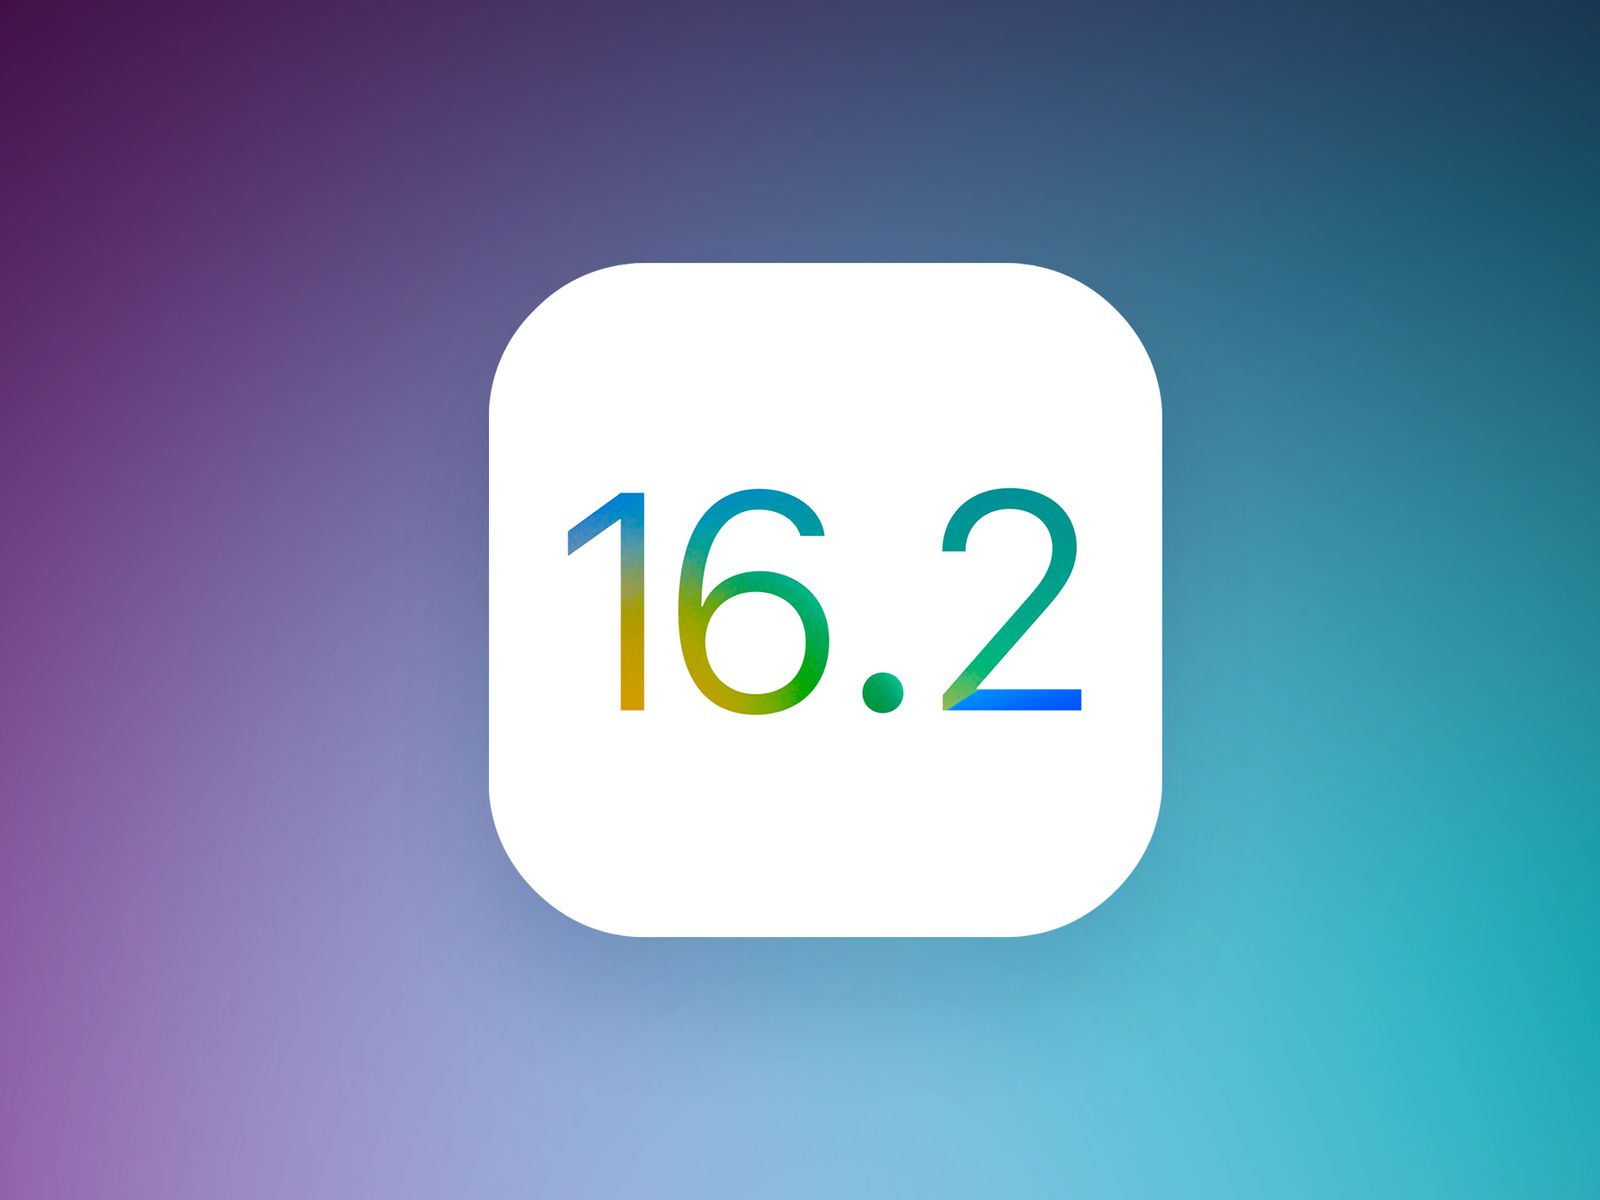 Co je nového v iOS 16.2 RC?